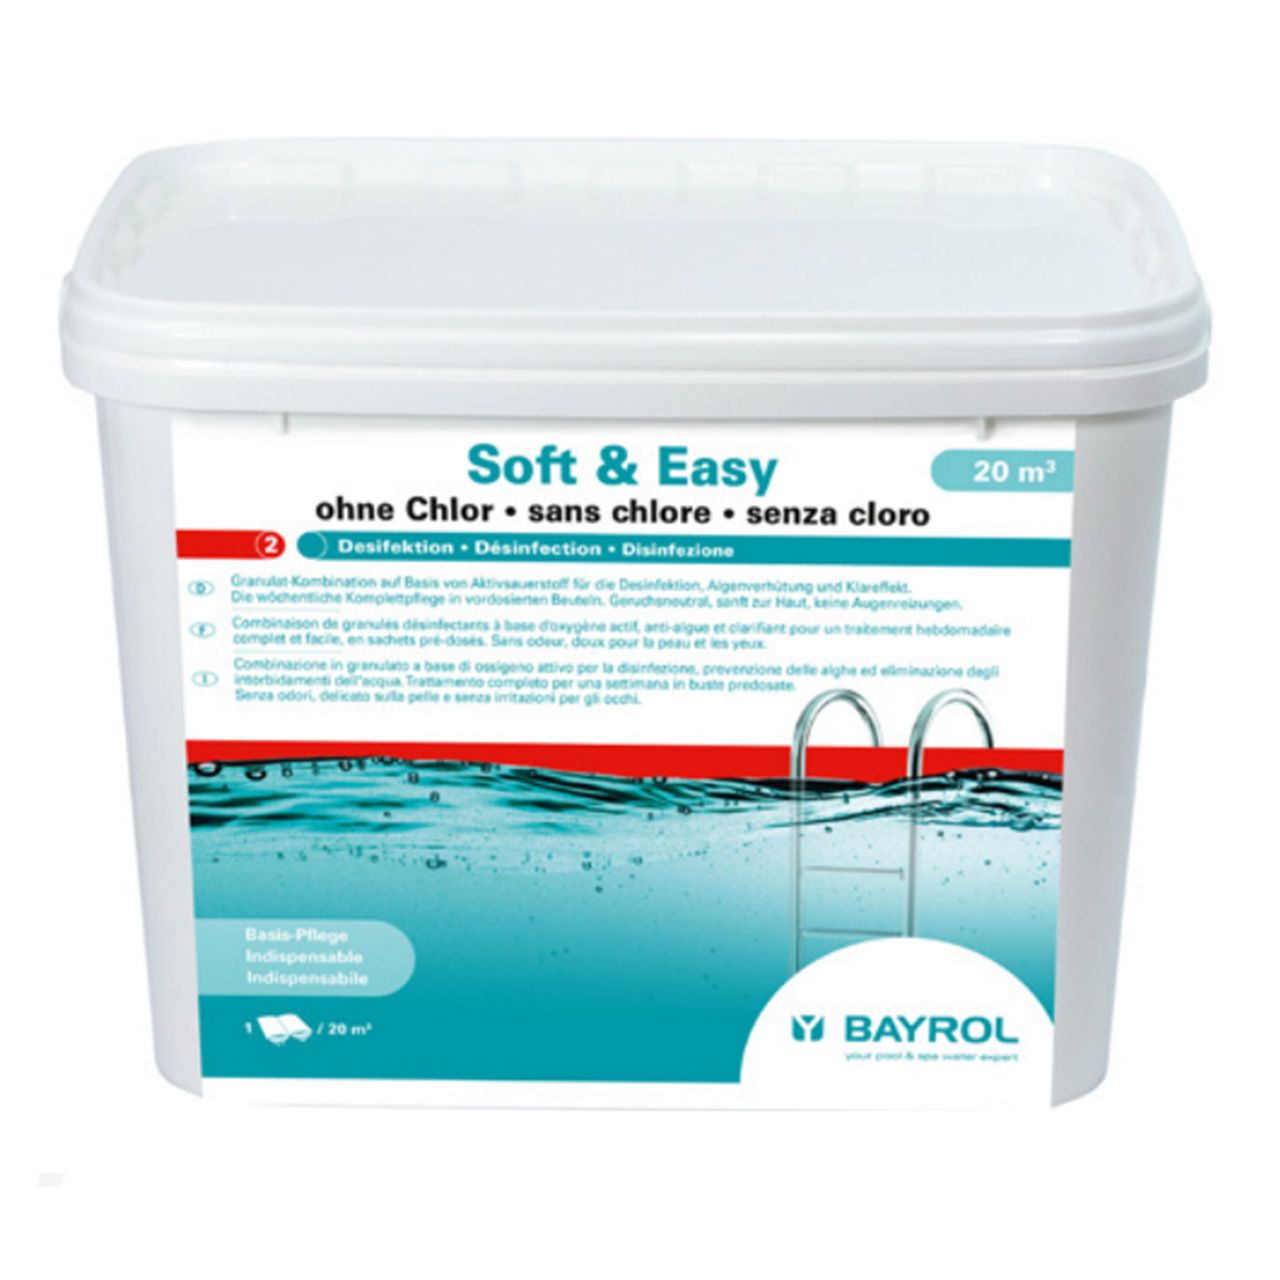 Bayrol Soft & Easy chlorfrei 20m3